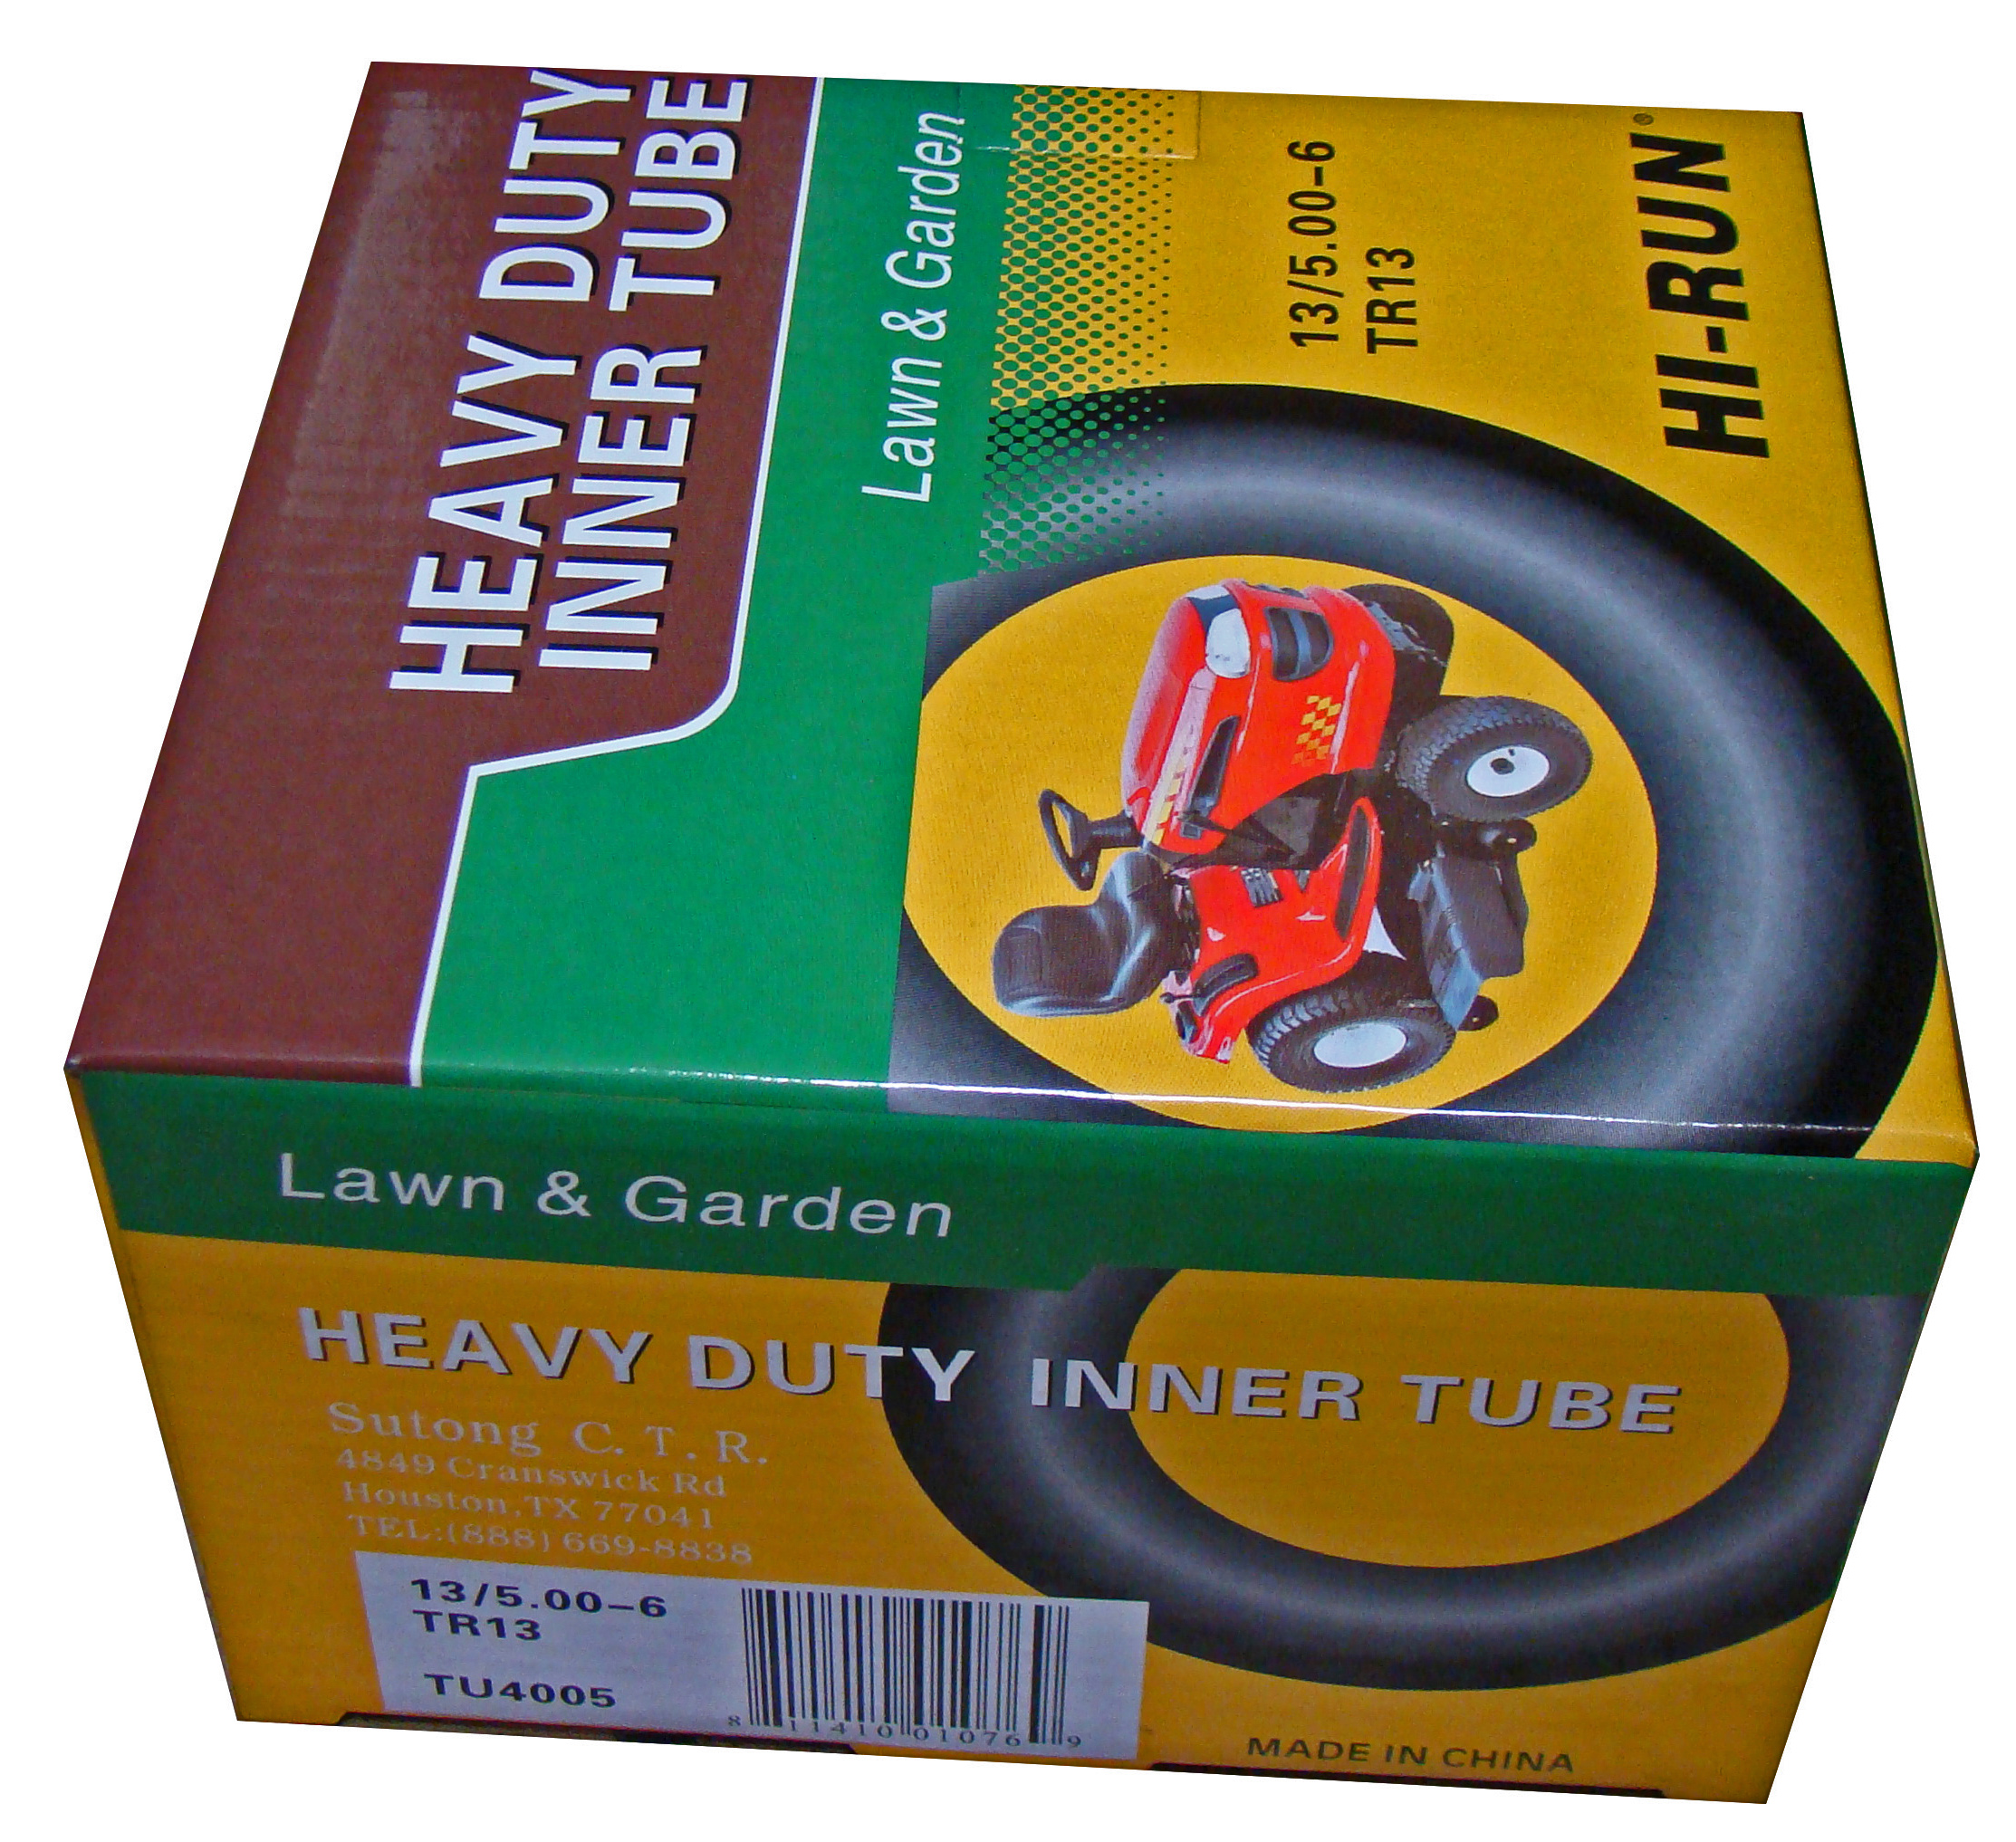 HI-RUN TUN4005 Lawn & Garden Tube 13/500-6